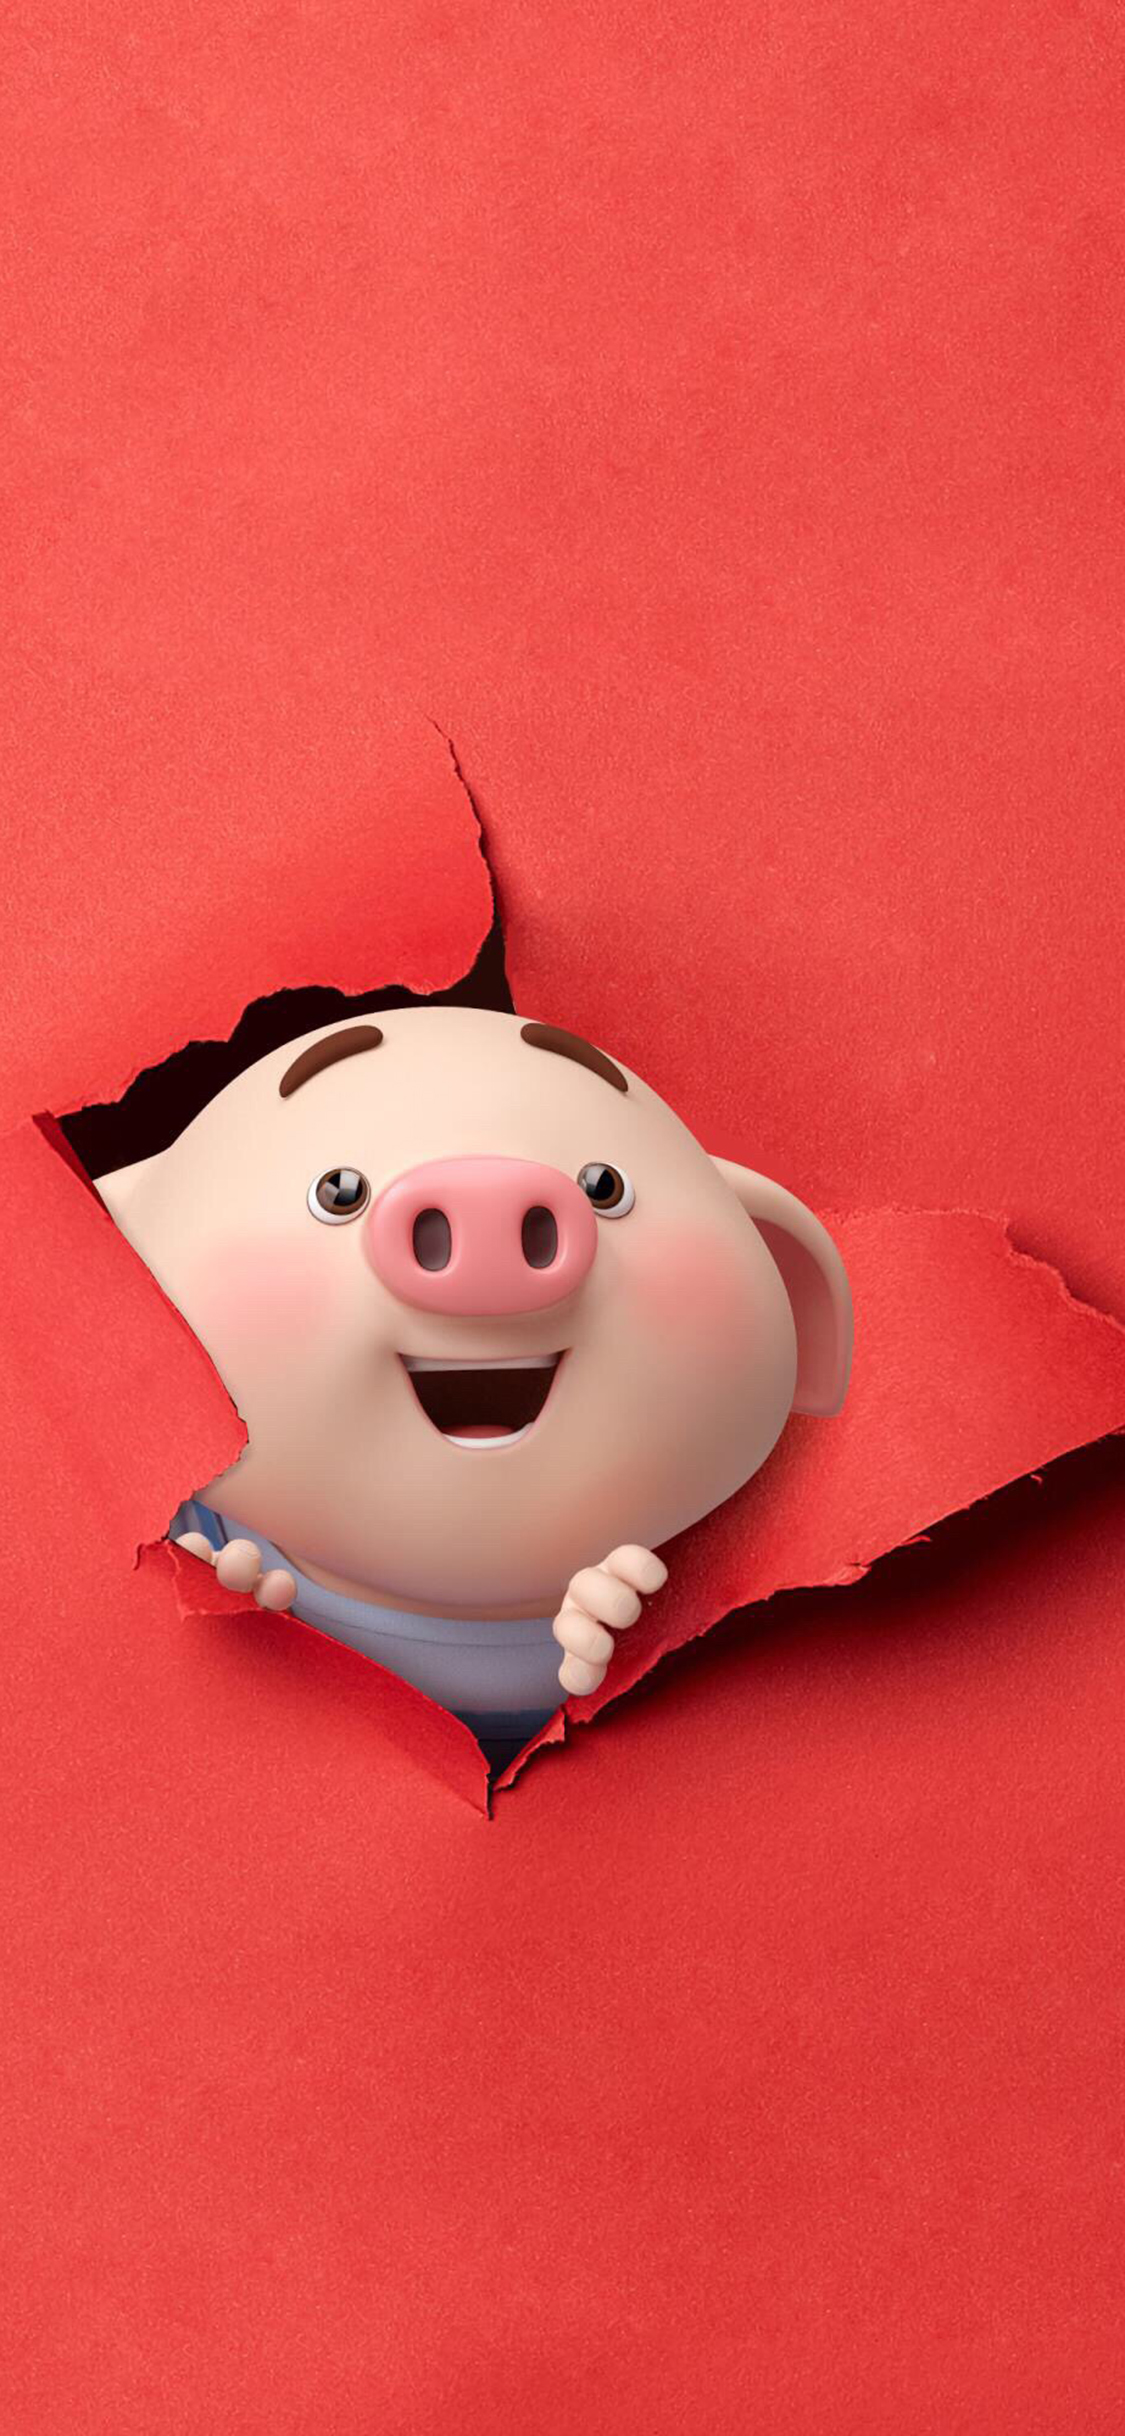 2019猪年红色手机壁纸大全 24张猪年开运手机